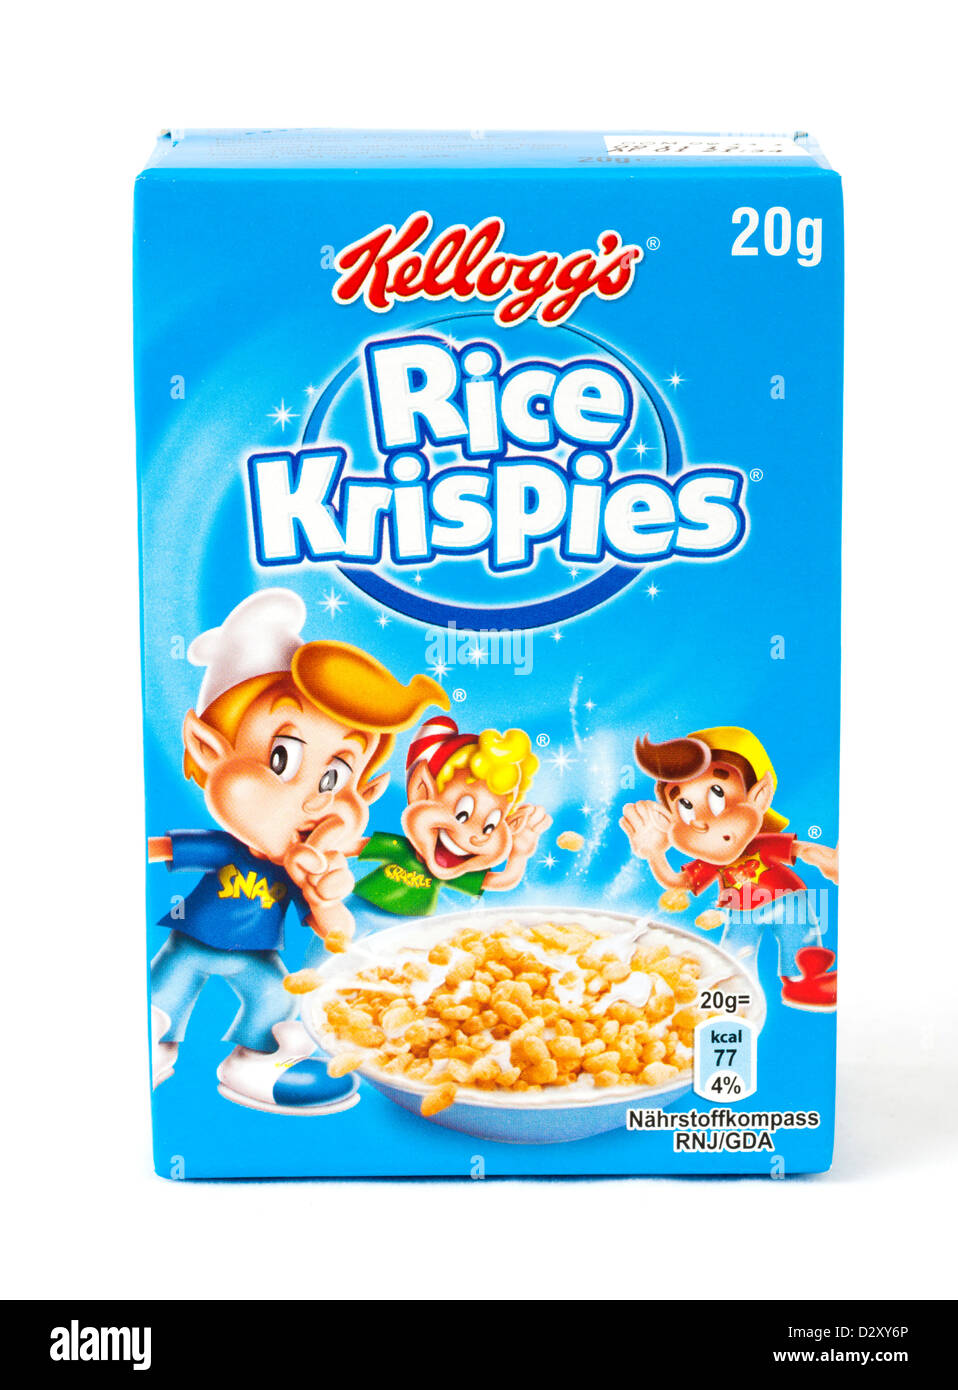 Rice Krispies Logo